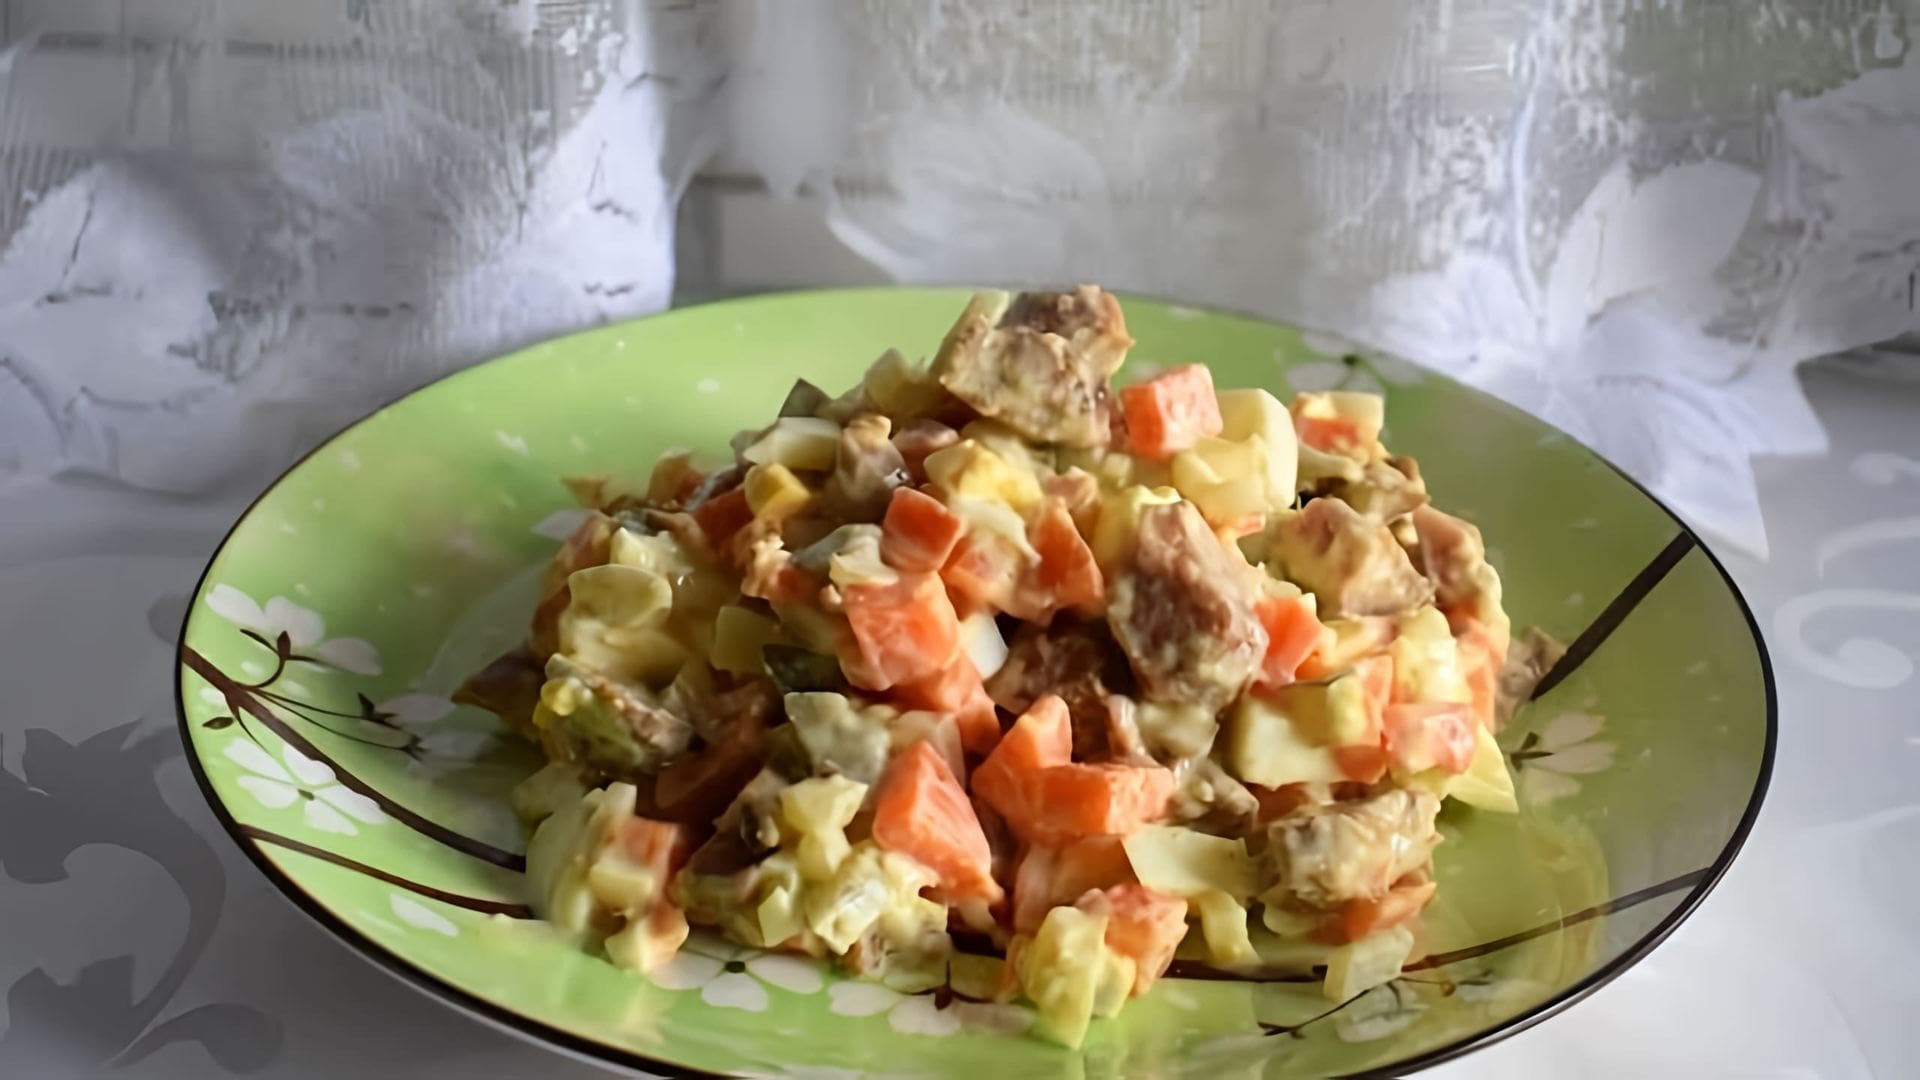 В этом видео демонстрируется рецепт приготовления салата с печенью минтая